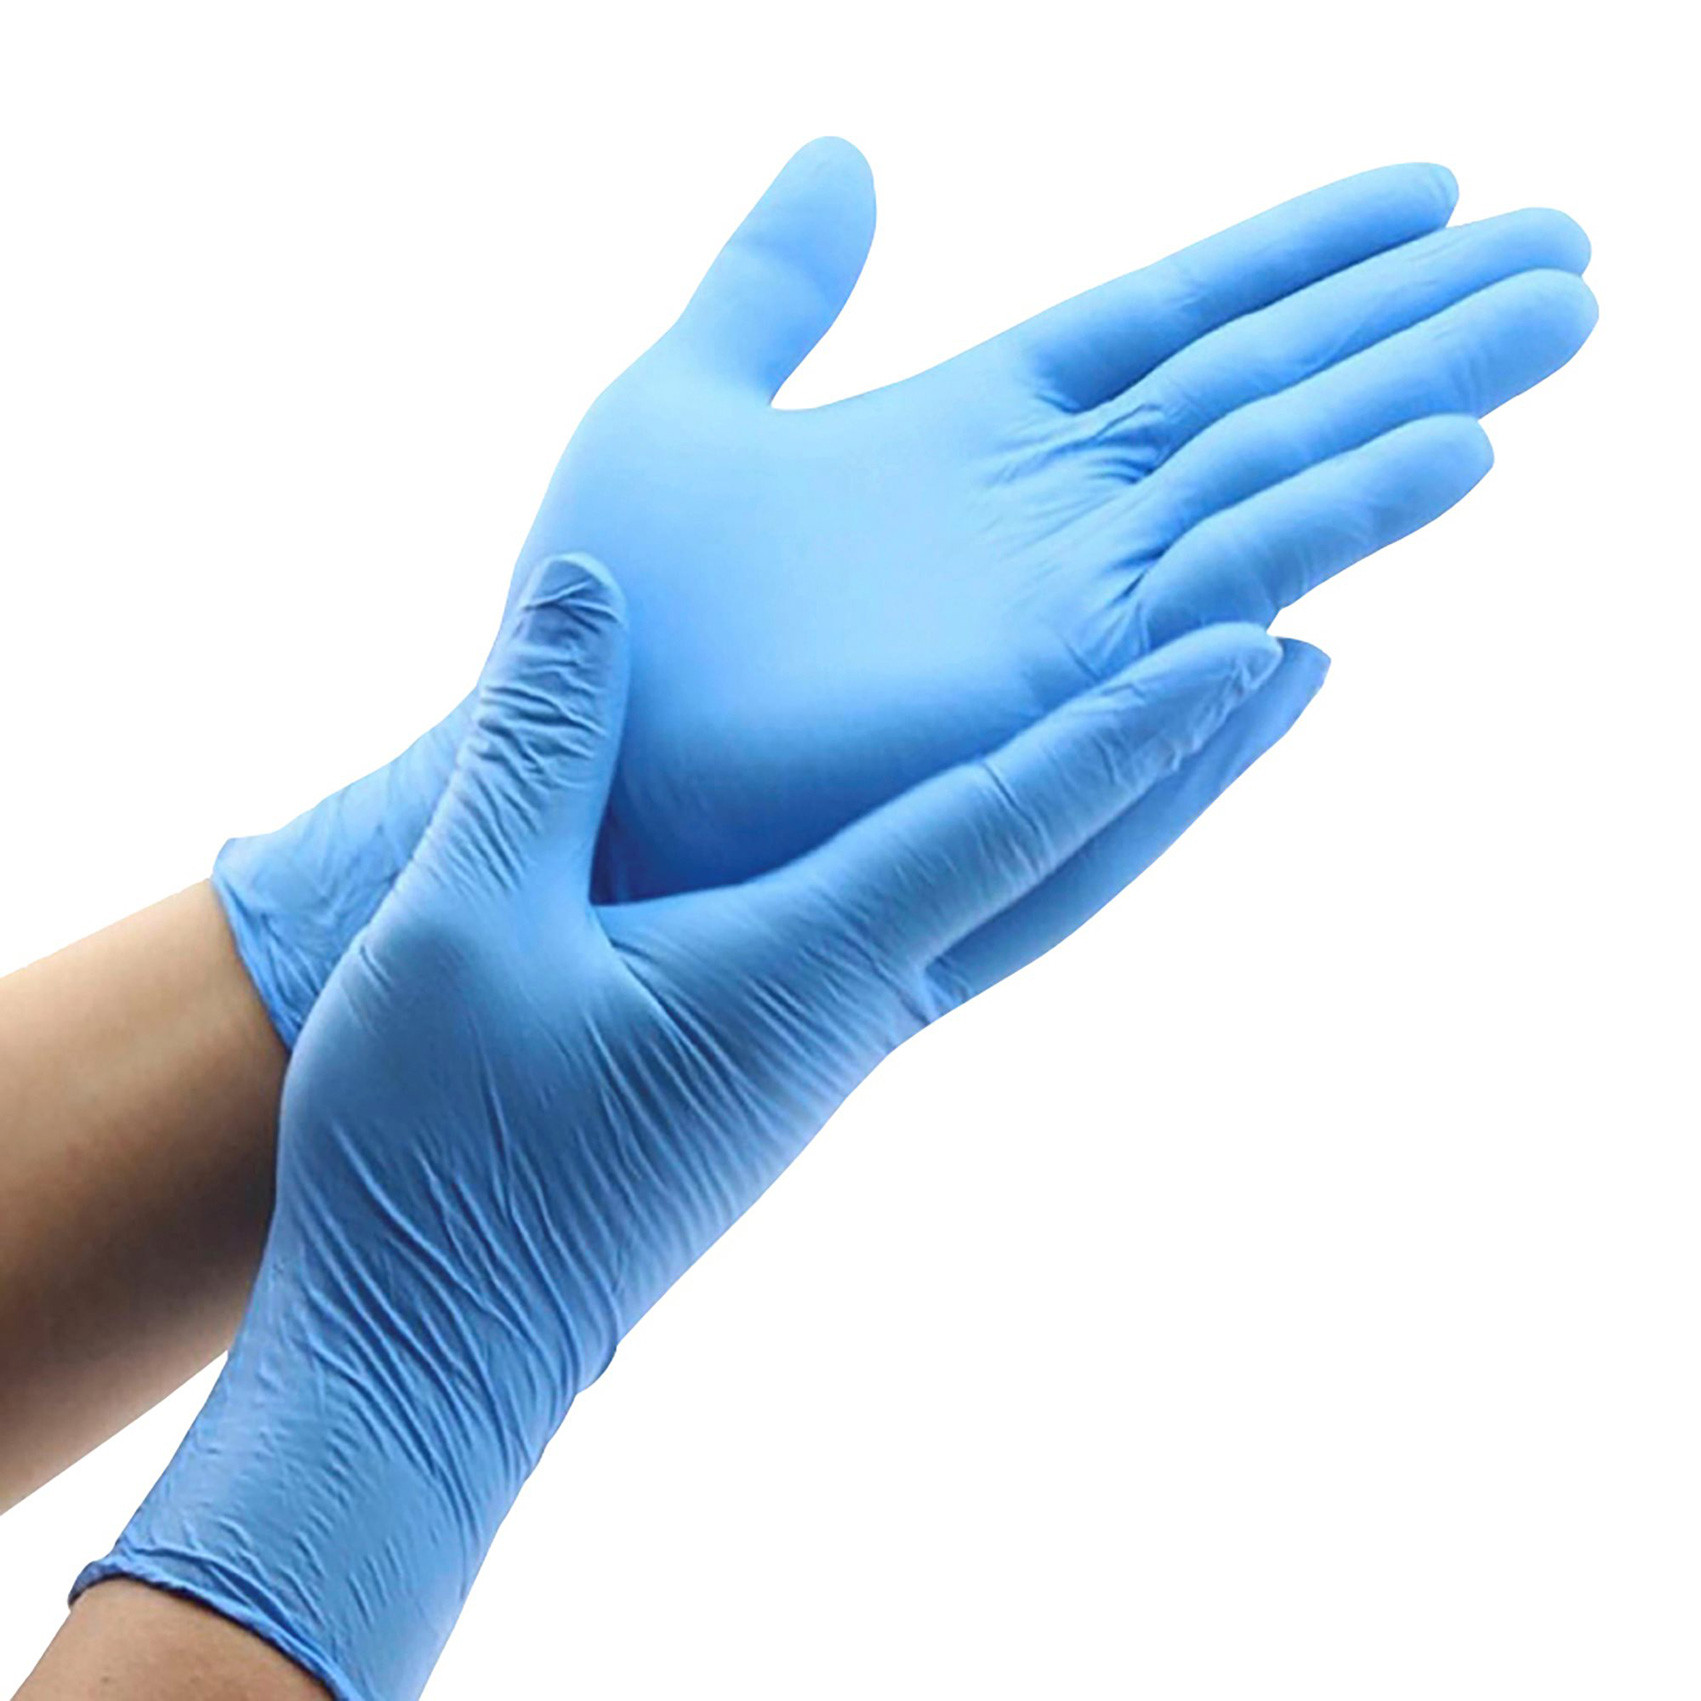 Guanti nitrile blu monouso senza polvere per contatto alimenti, 48